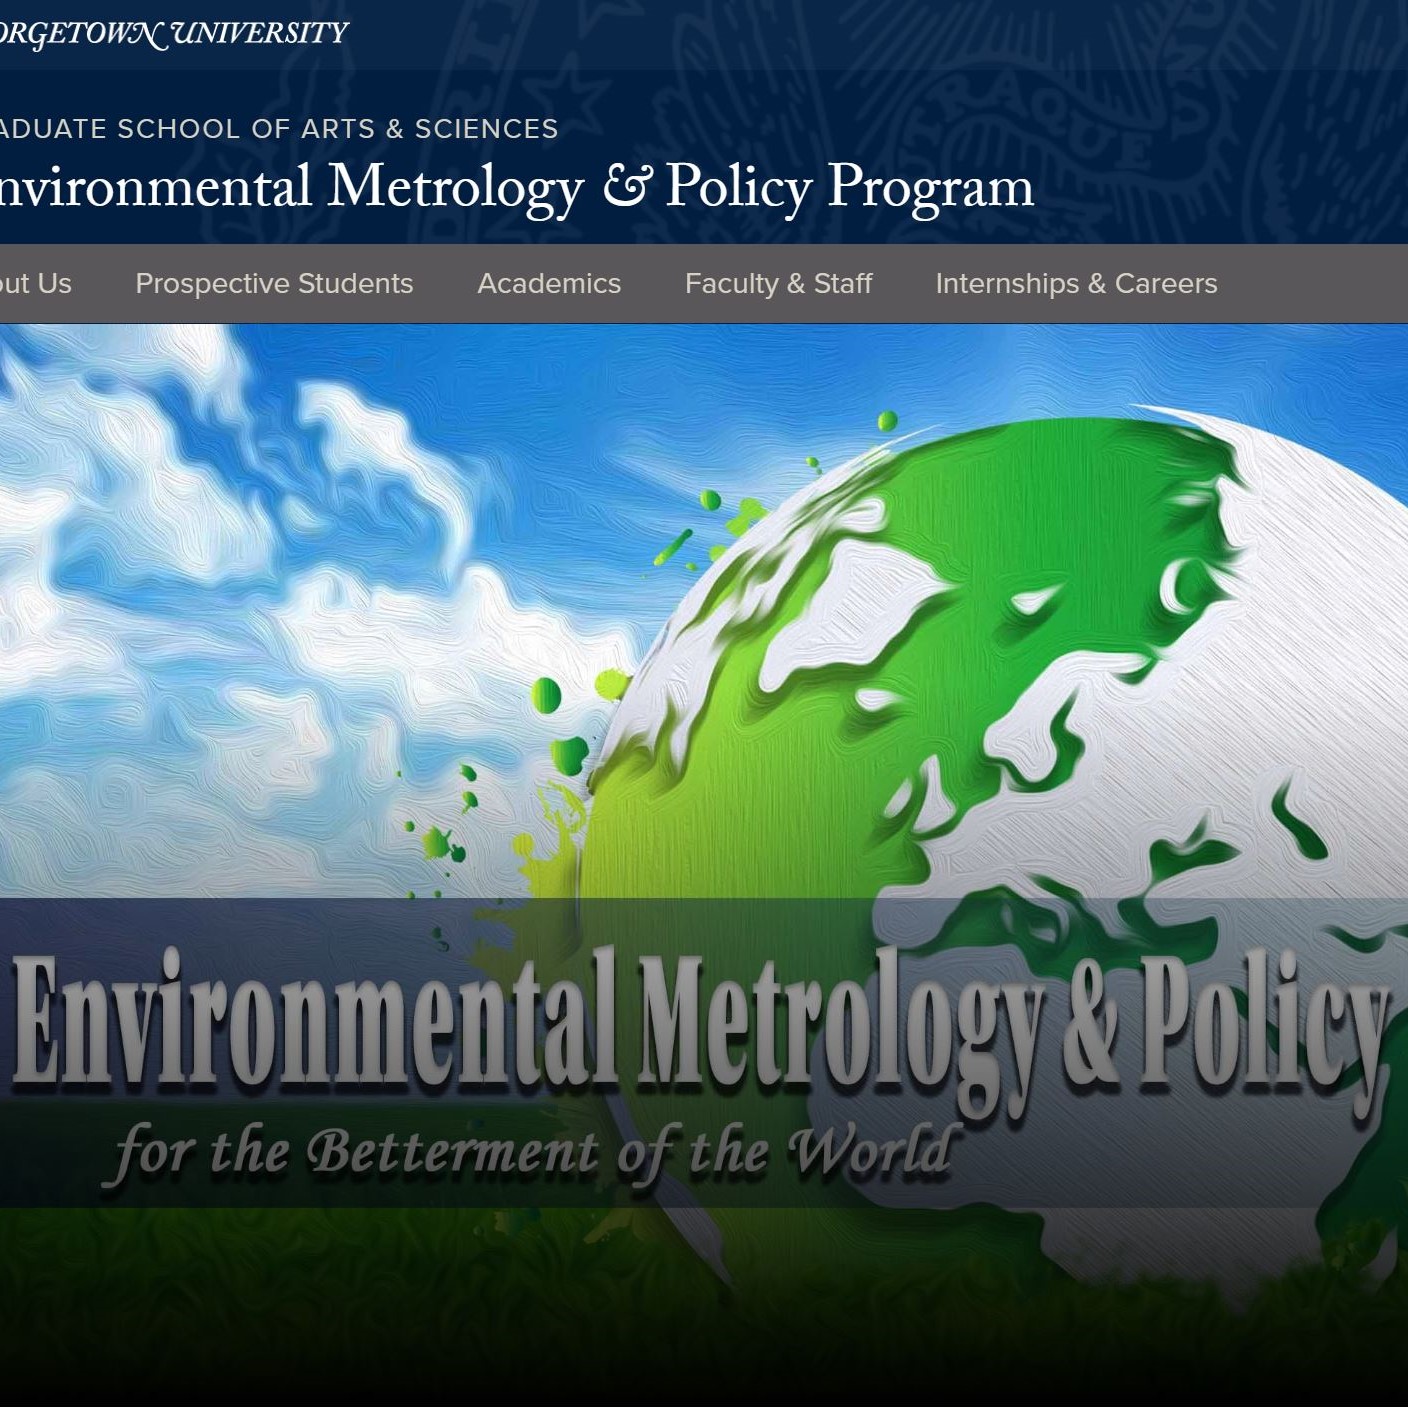 Georgetown University Environmental Metrology & Policy Program Website